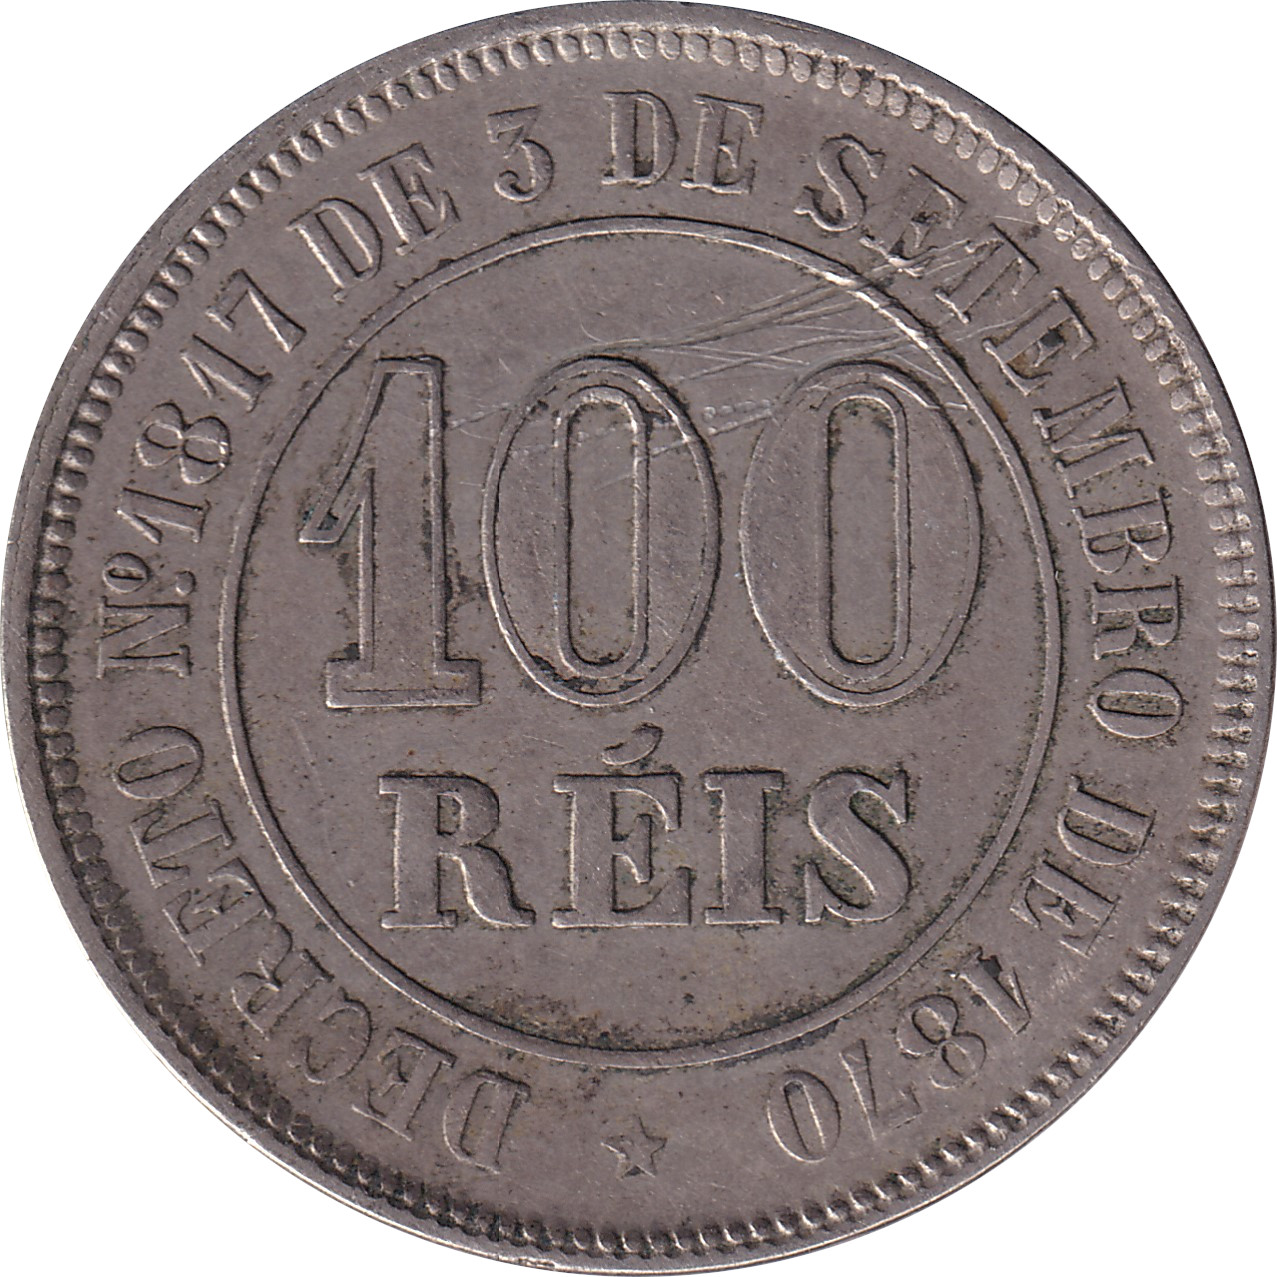 100 reis - Pierre II - Cercle central creux